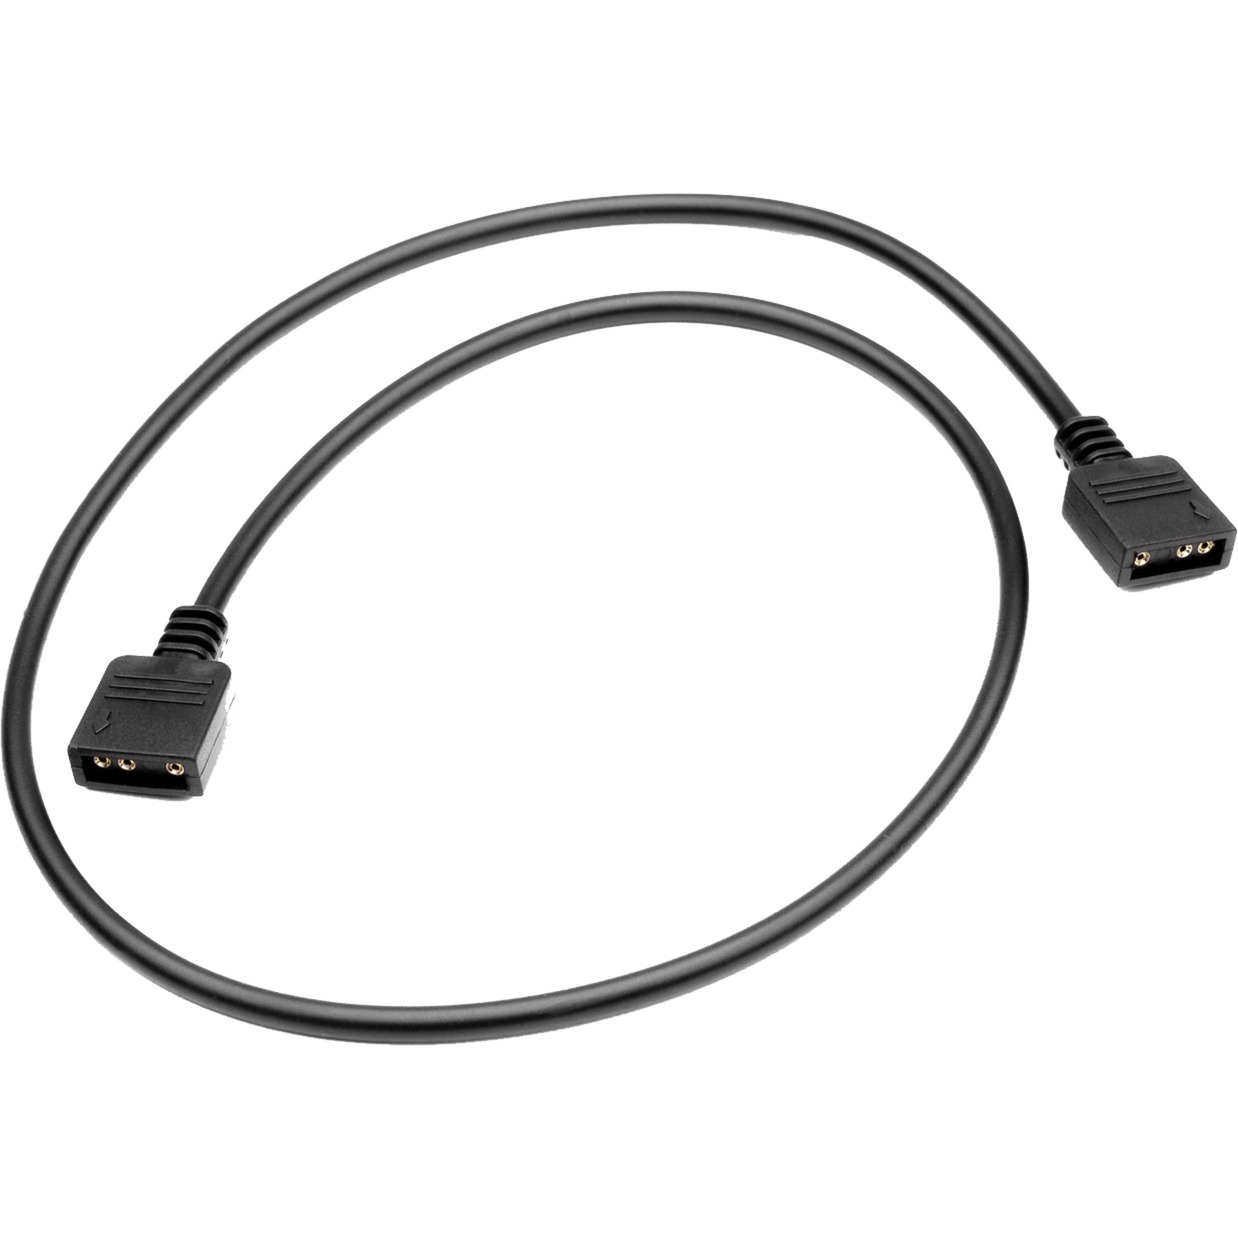 Image of Alternate - EK-Loop D-RGB Verlängerungskabel online einkaufen bei Alternate